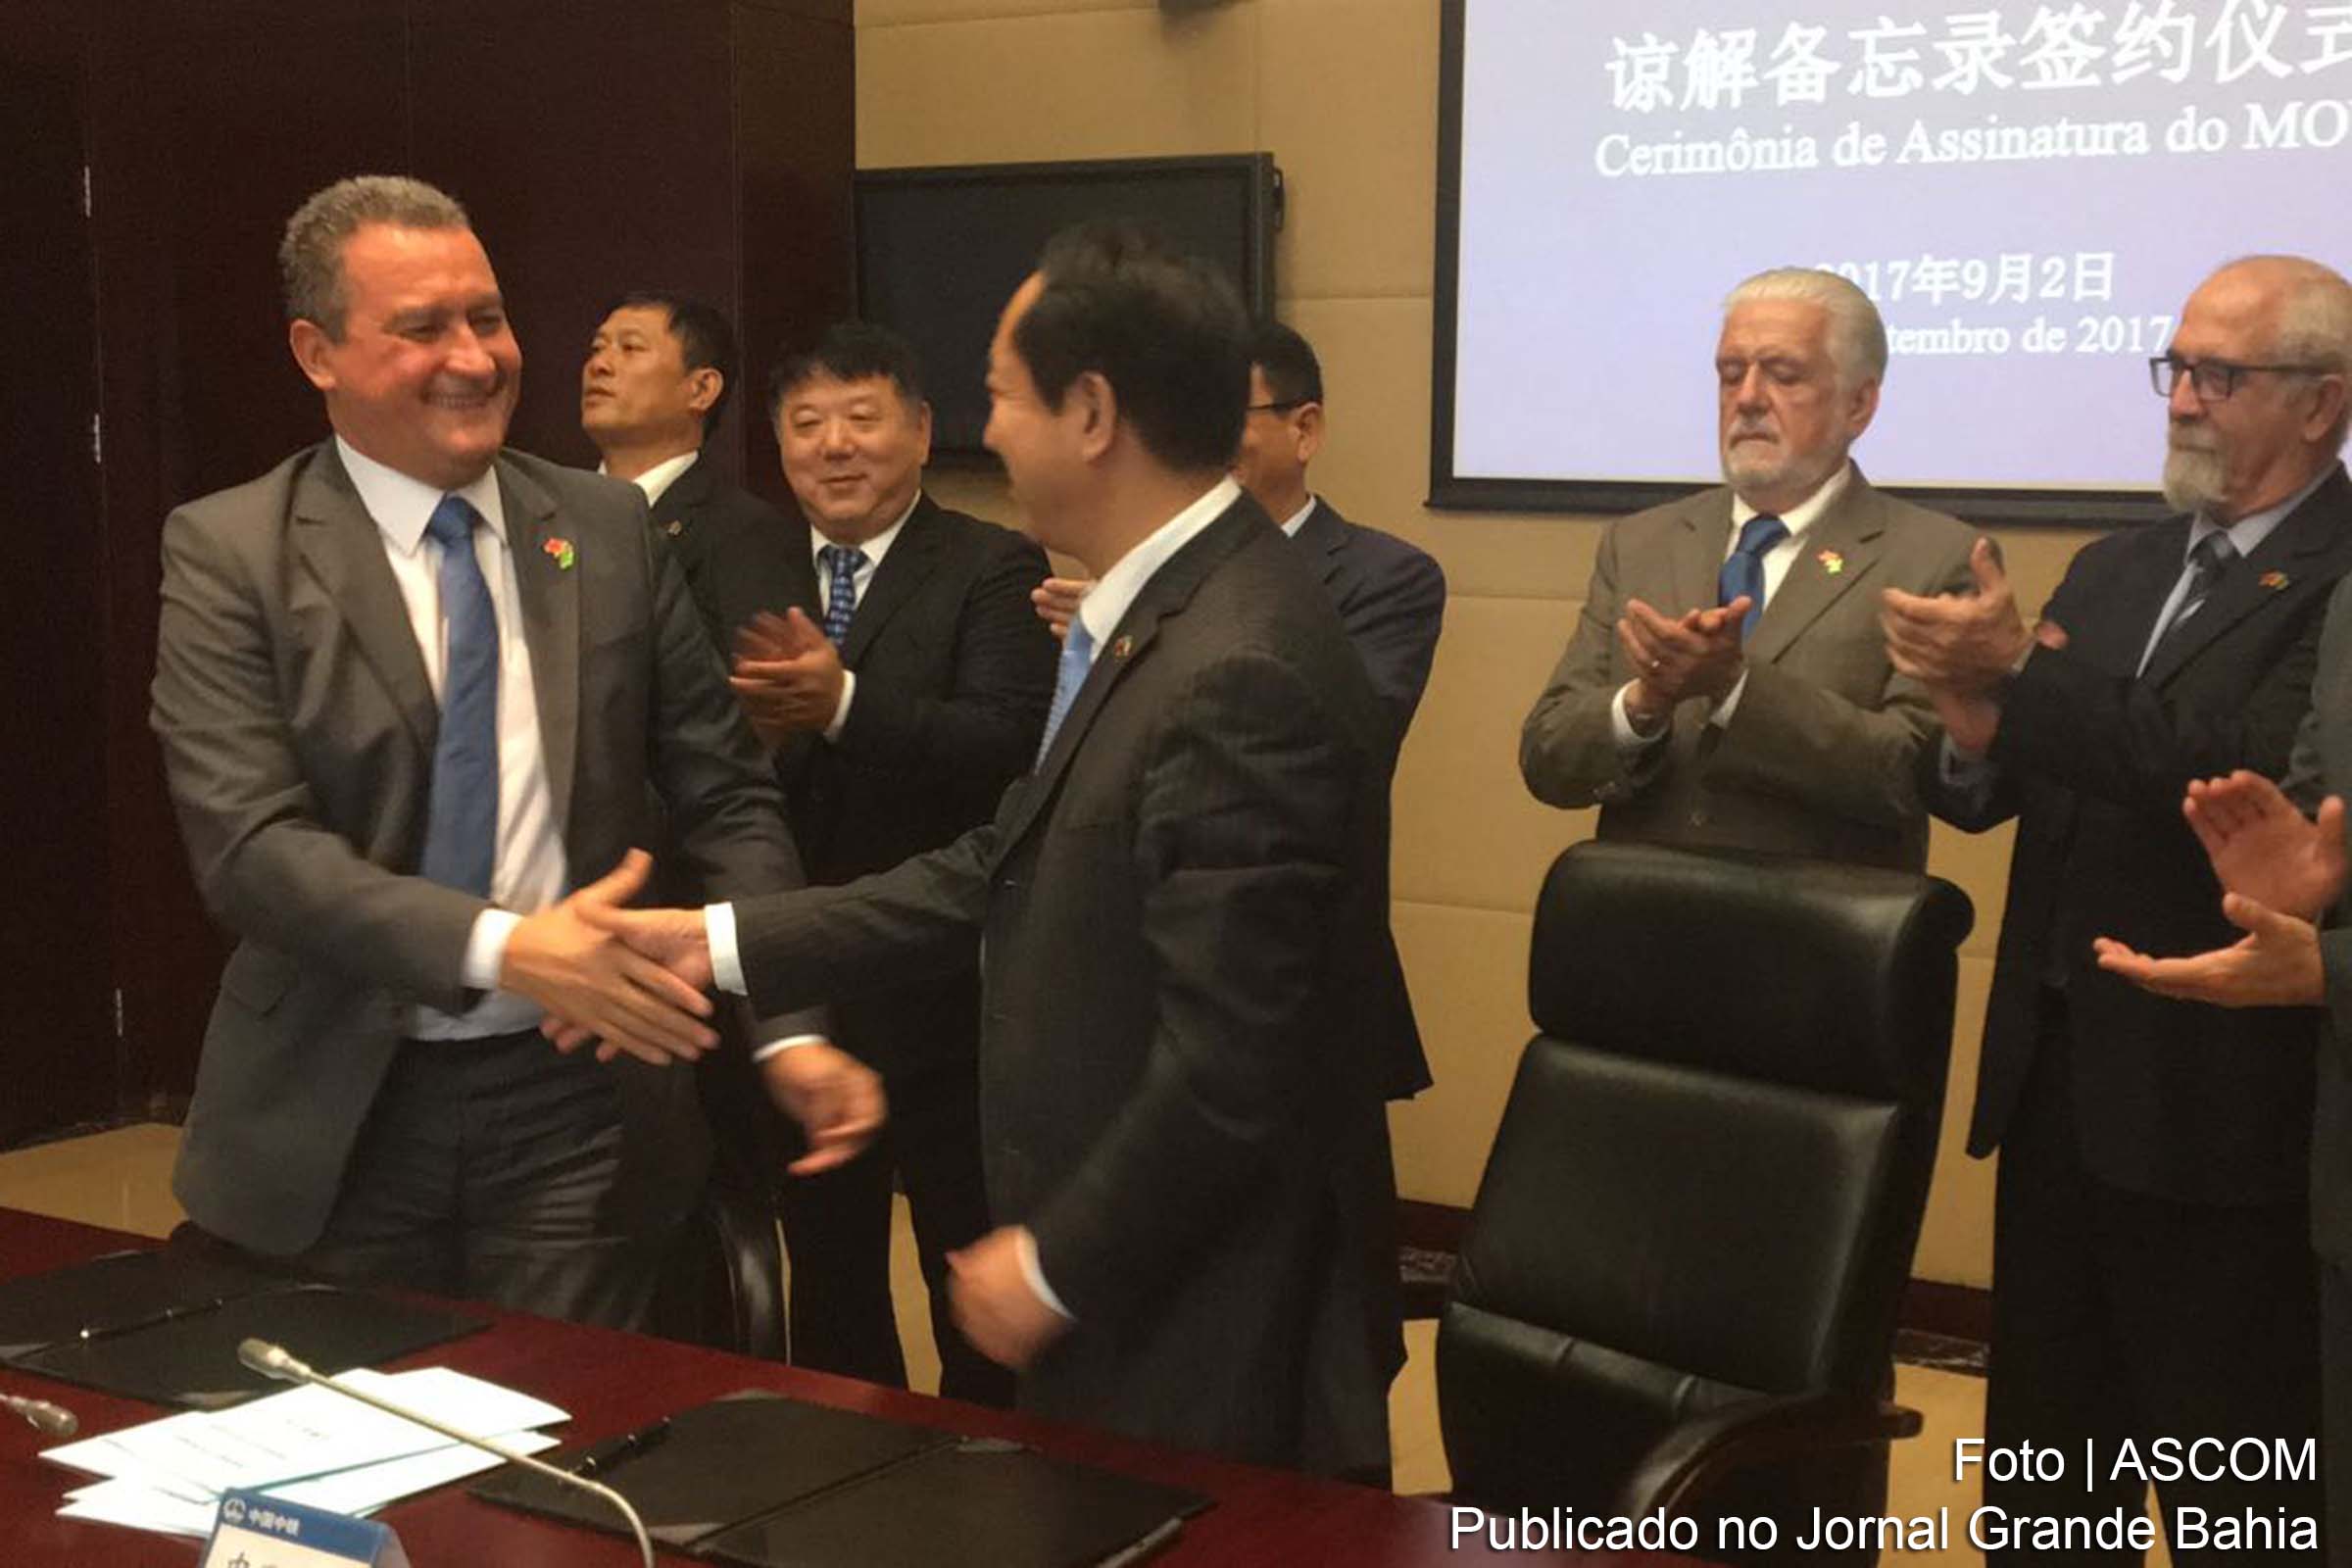 Governador Rui Costa e representantes do CREC 4 firmam acordo para construção de ponte.